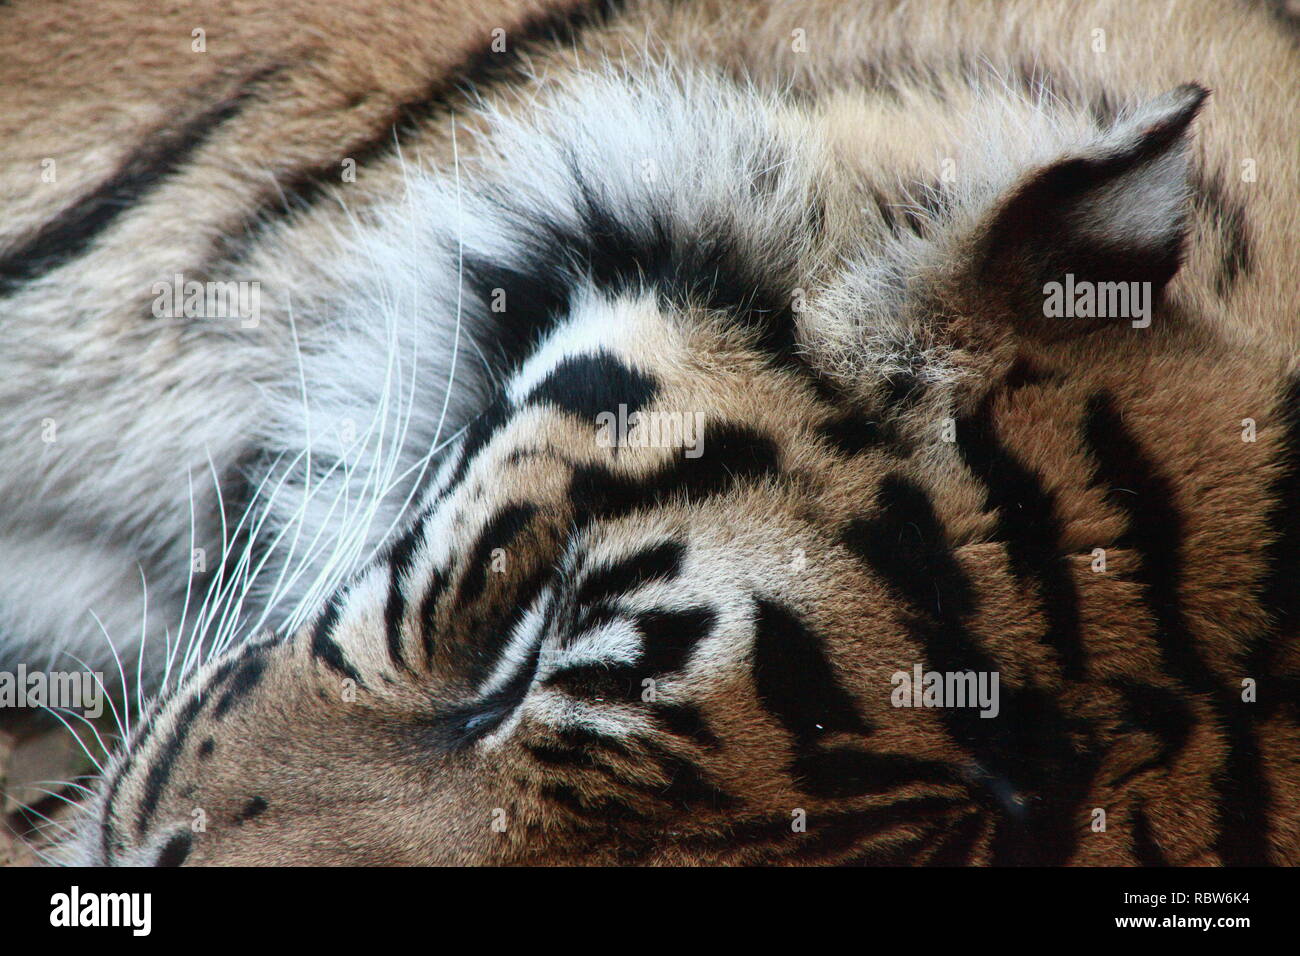 Sleeping tiger head Stock Photo